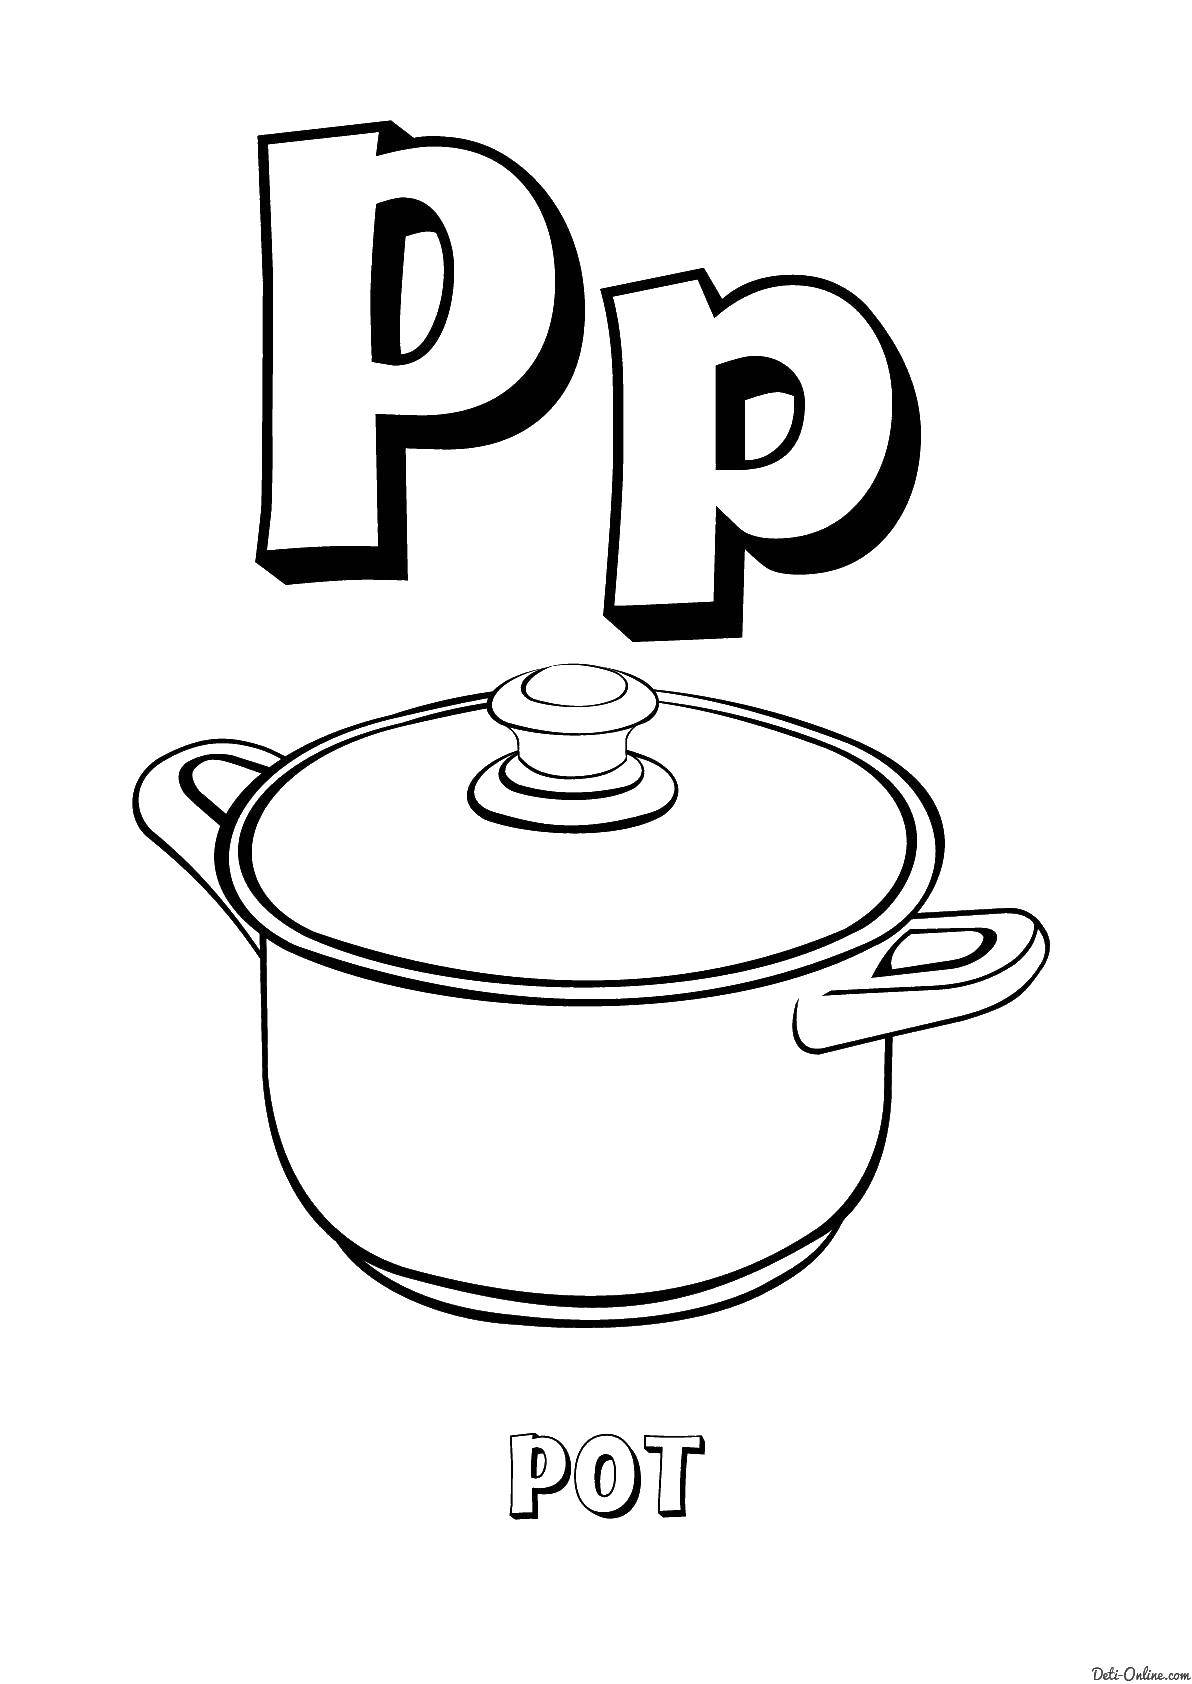 Название: Раскраска Pot. Категория: Английский. Теги: Pot, letter P, кастрюля буква П, английский.